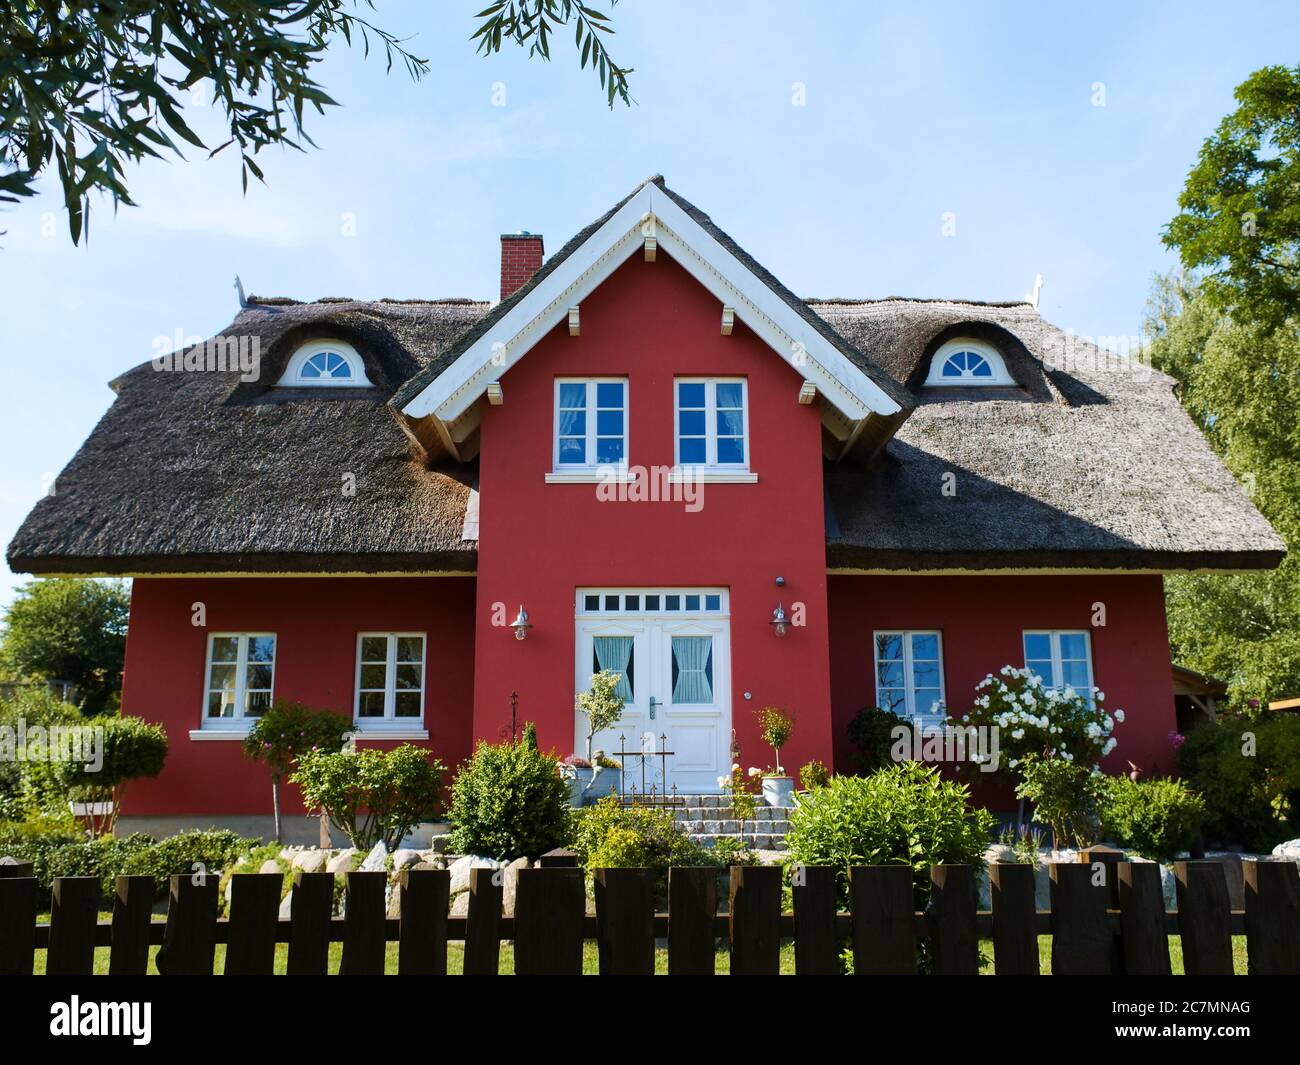 Rotes Haus mit Reetdach und gefplegtem Garten an der Ostsee Ferienhaus Stock Photo